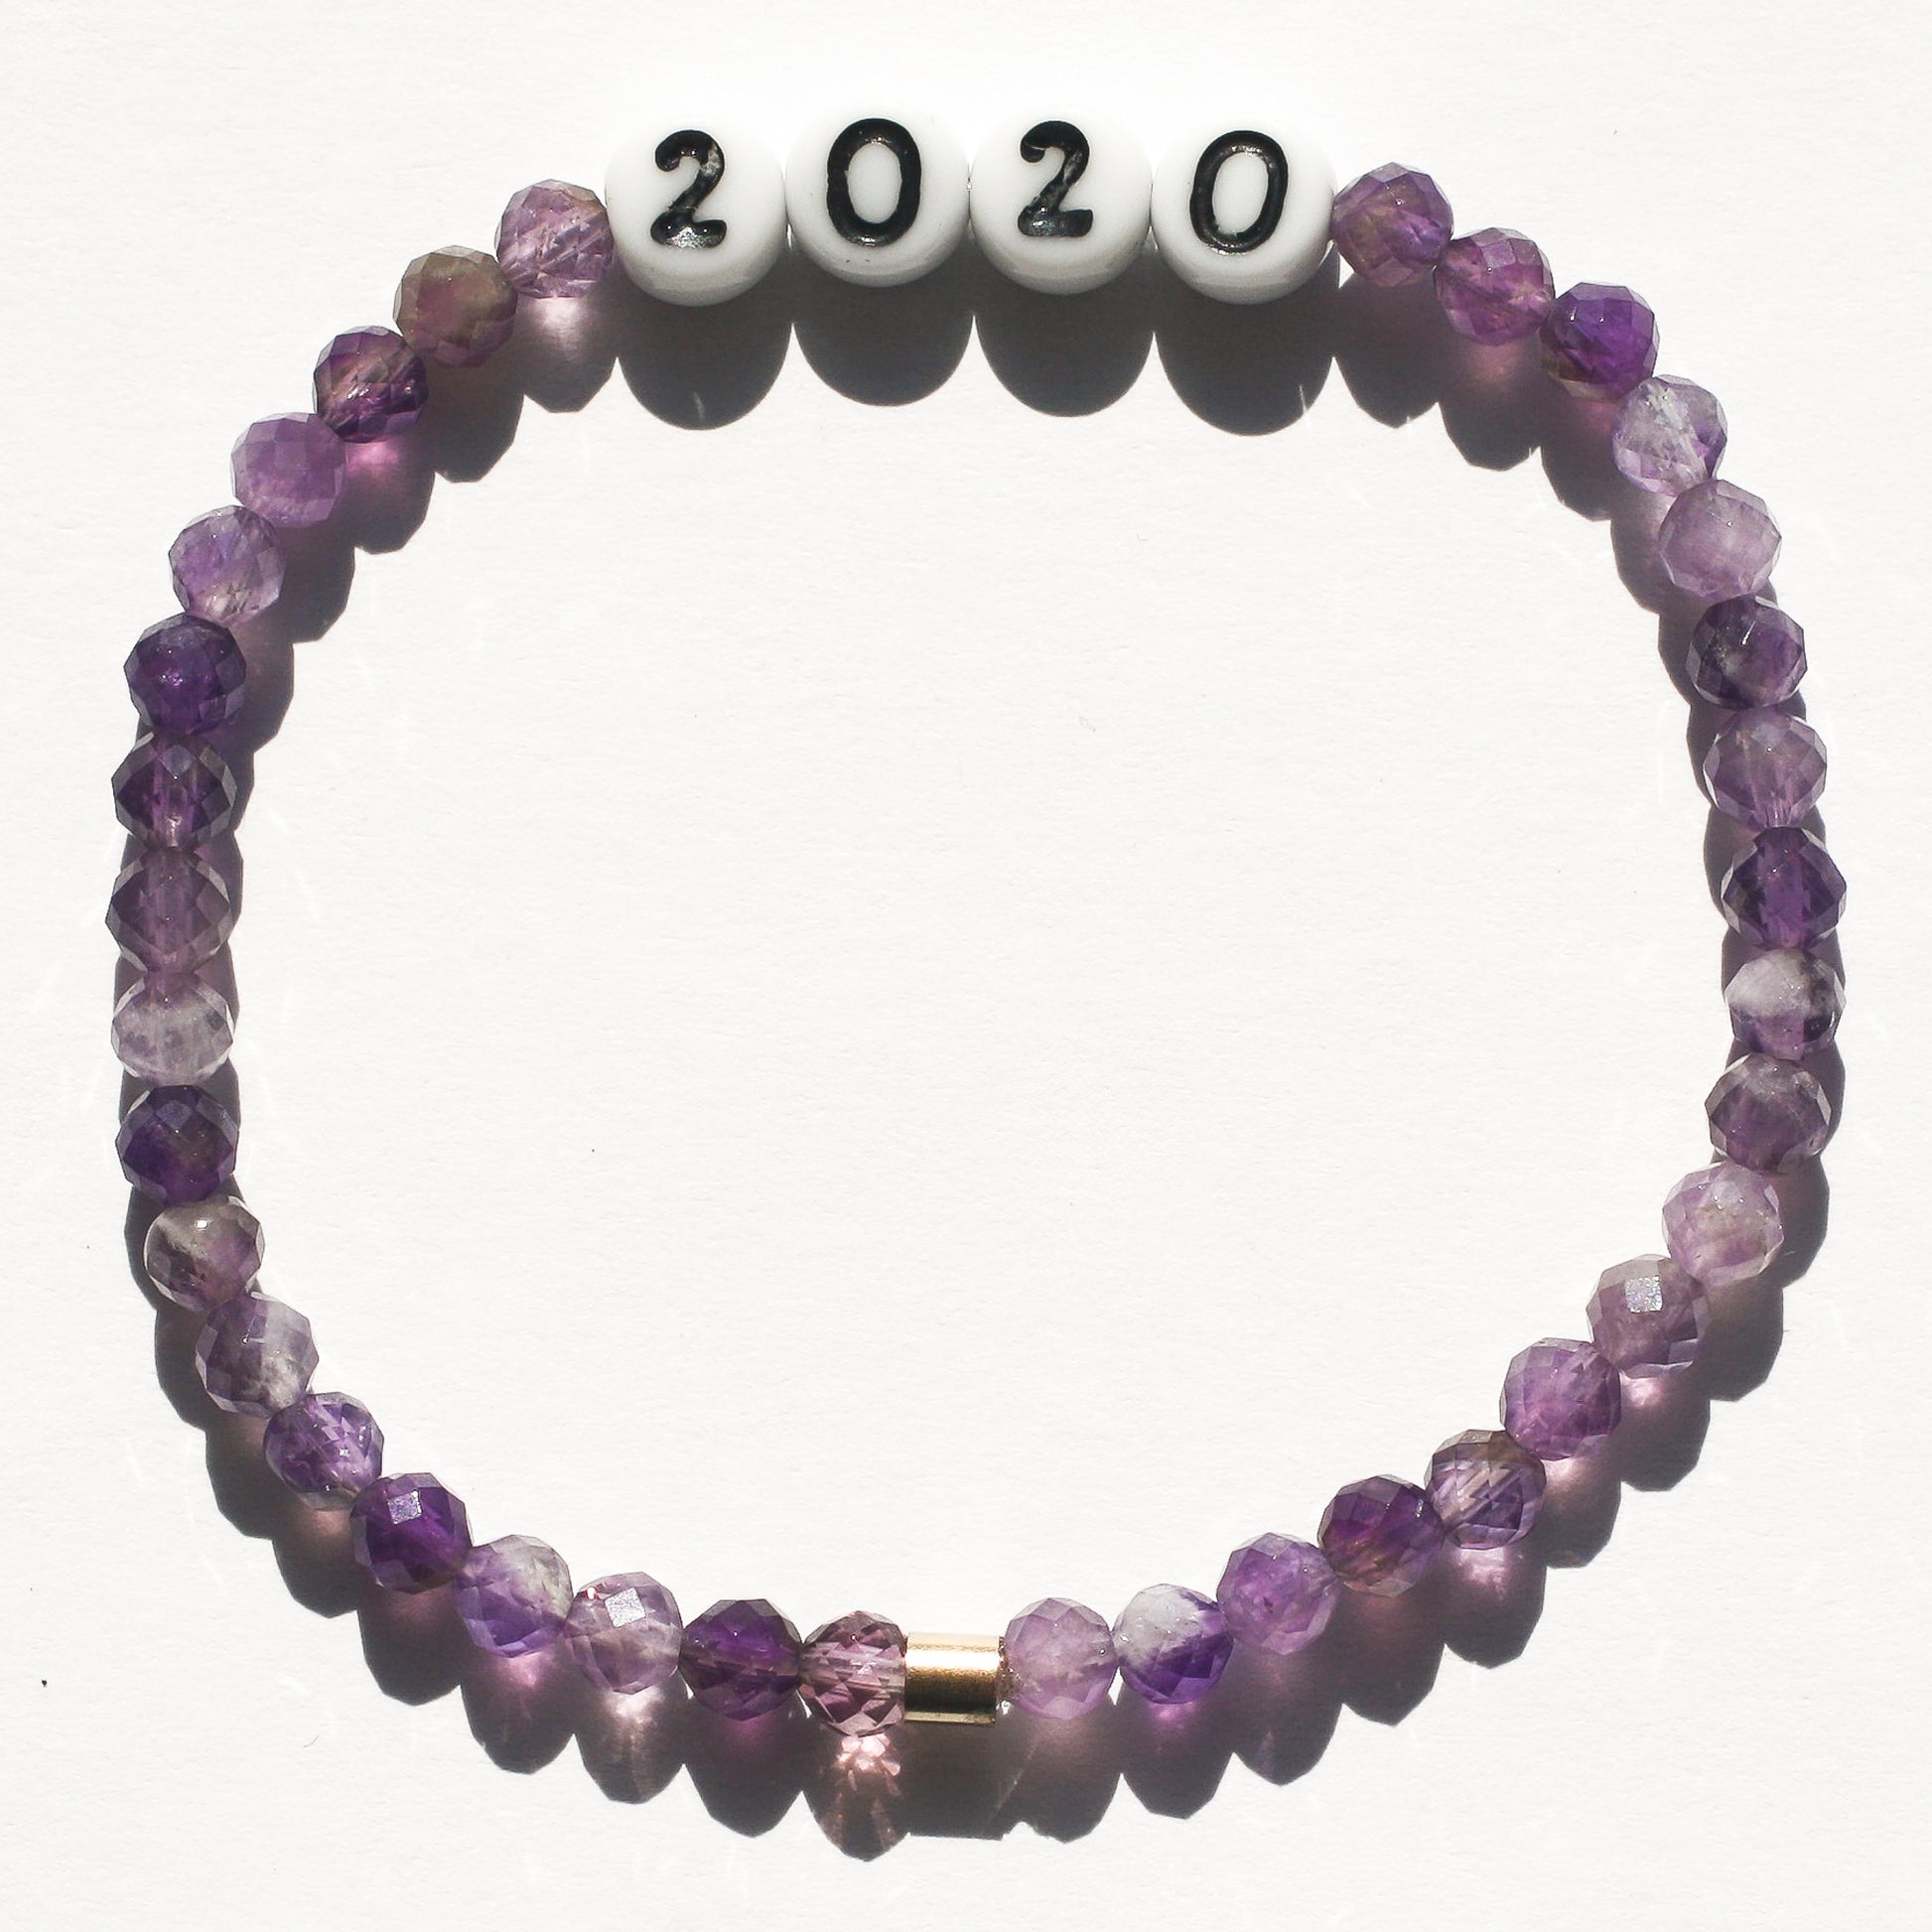 2020 bespoke bracelet in amethyst